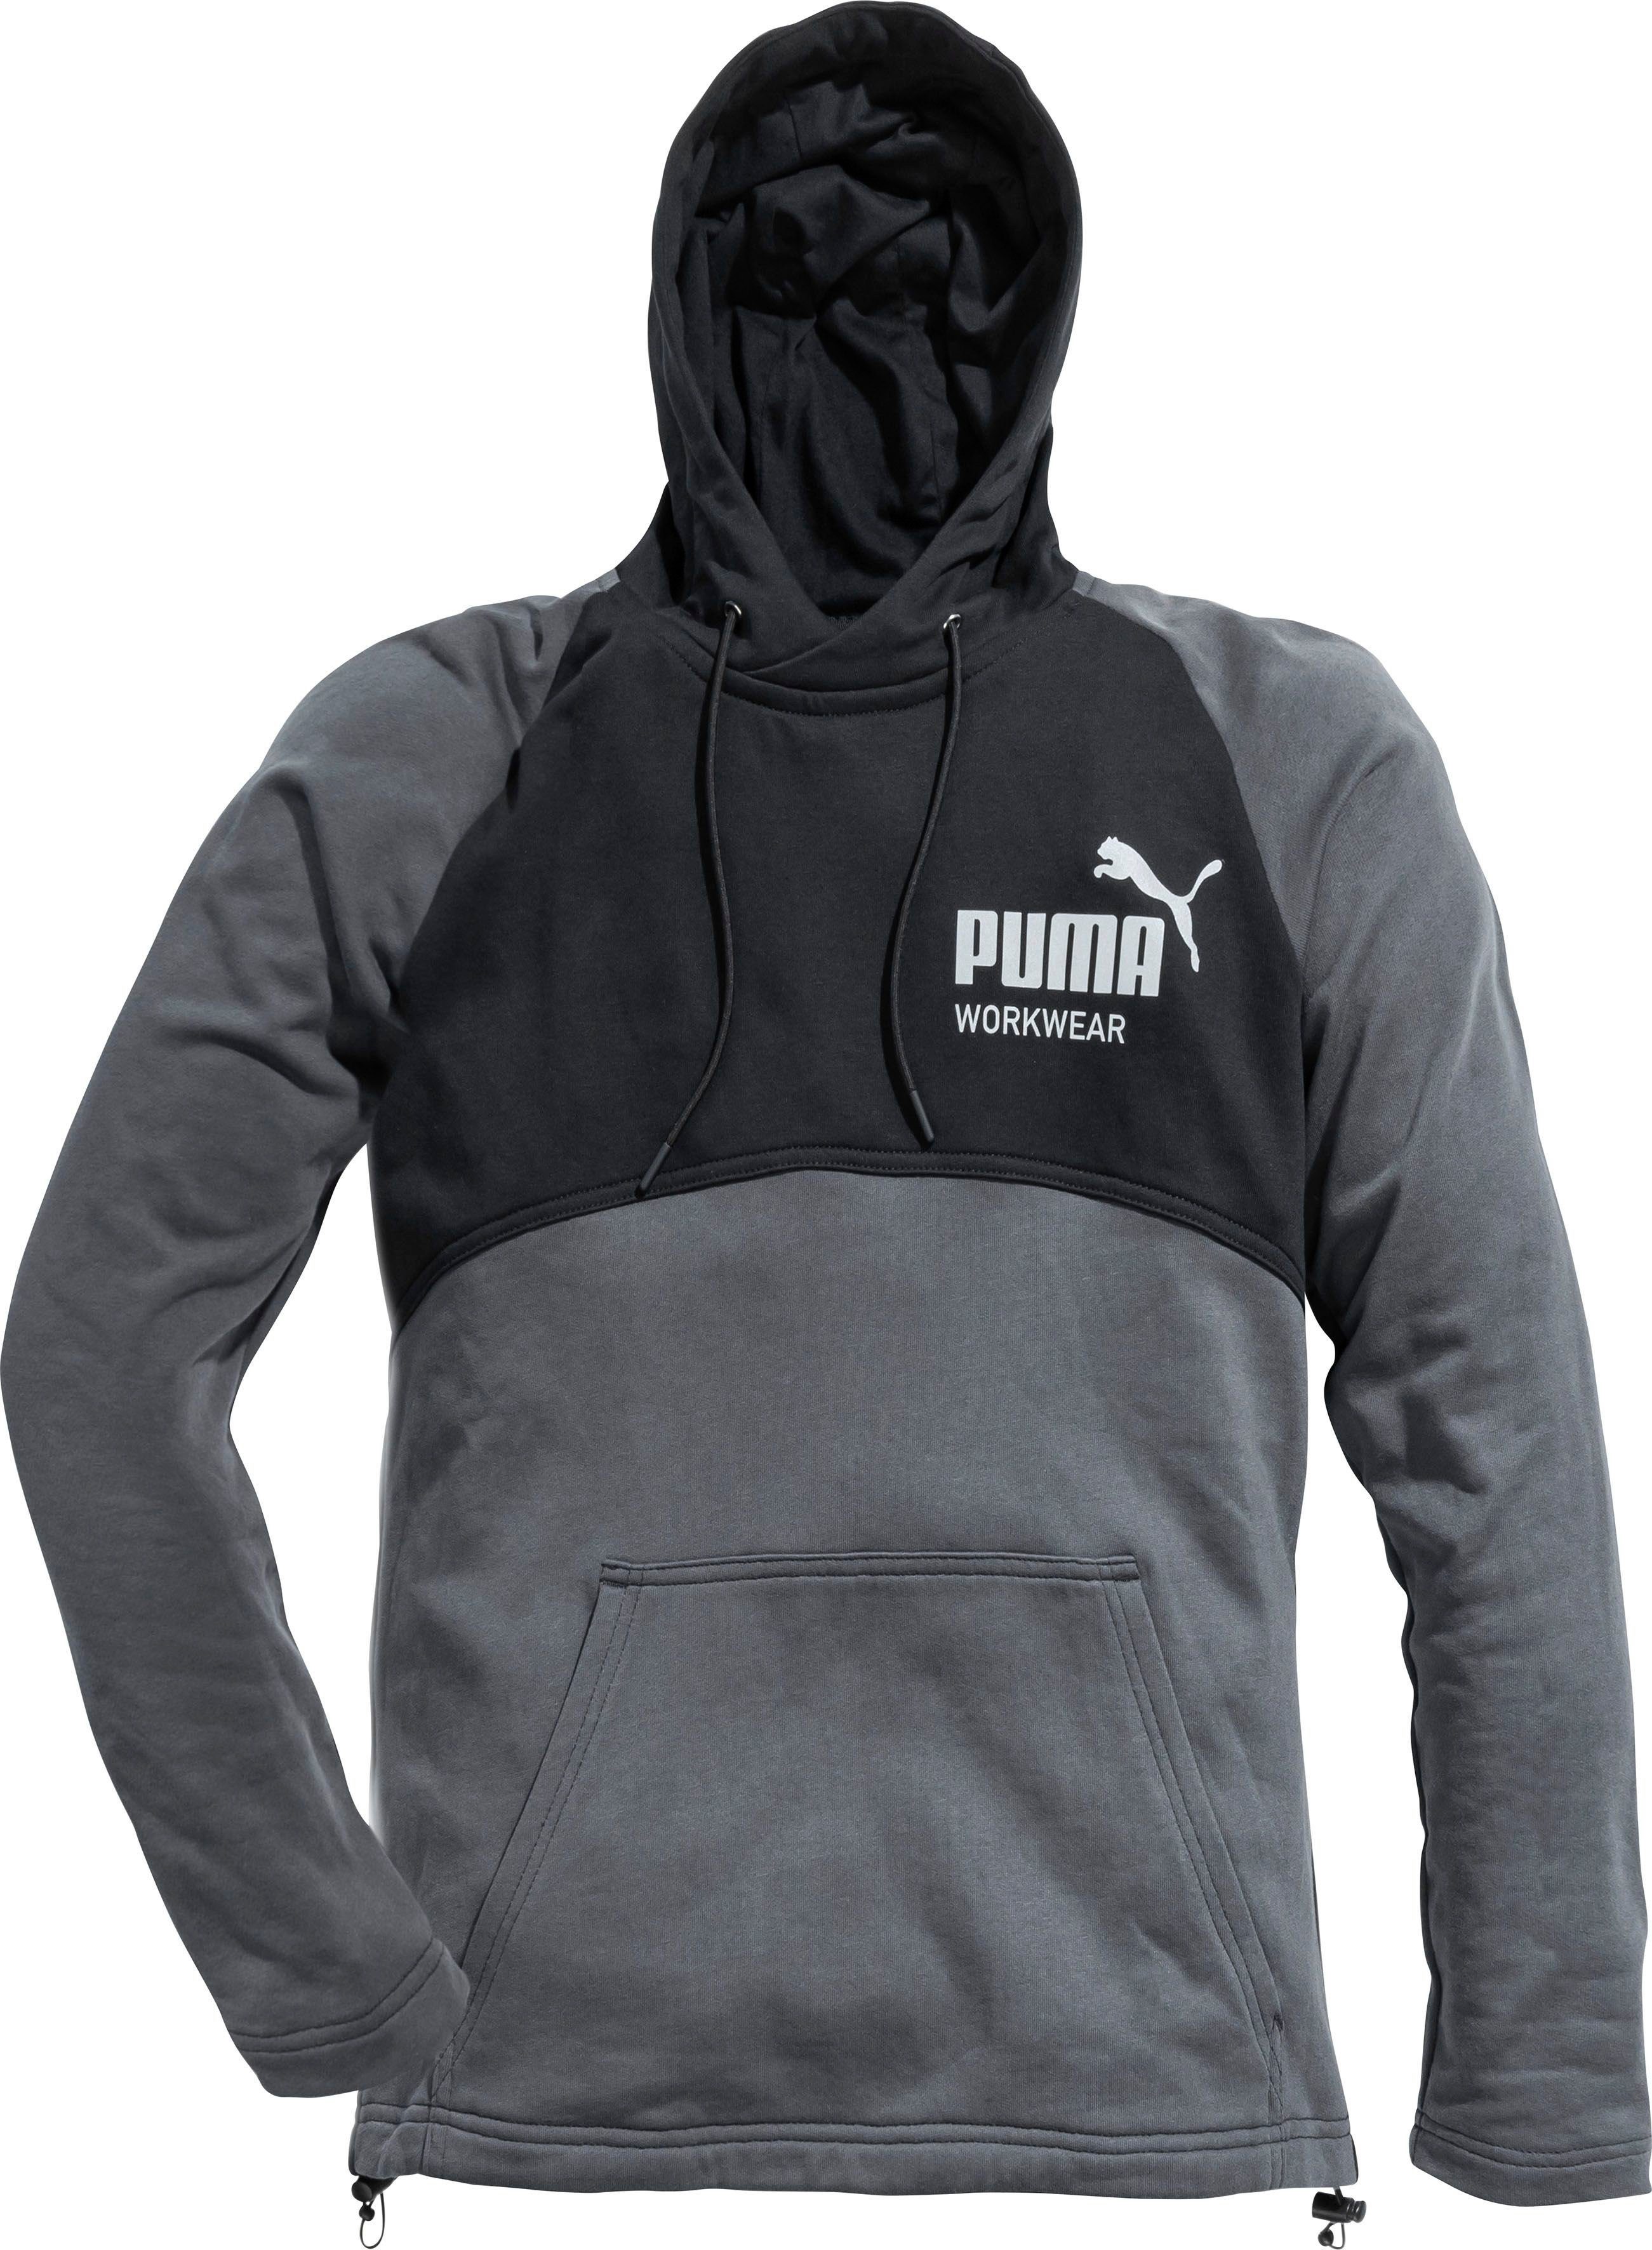 PUMA Workwear Hoodie CHAMP gefütterte Kapuze, Kangaroo-Tasche,  verstellbarer Saum, Gefütterte Kapuze mit Zugband